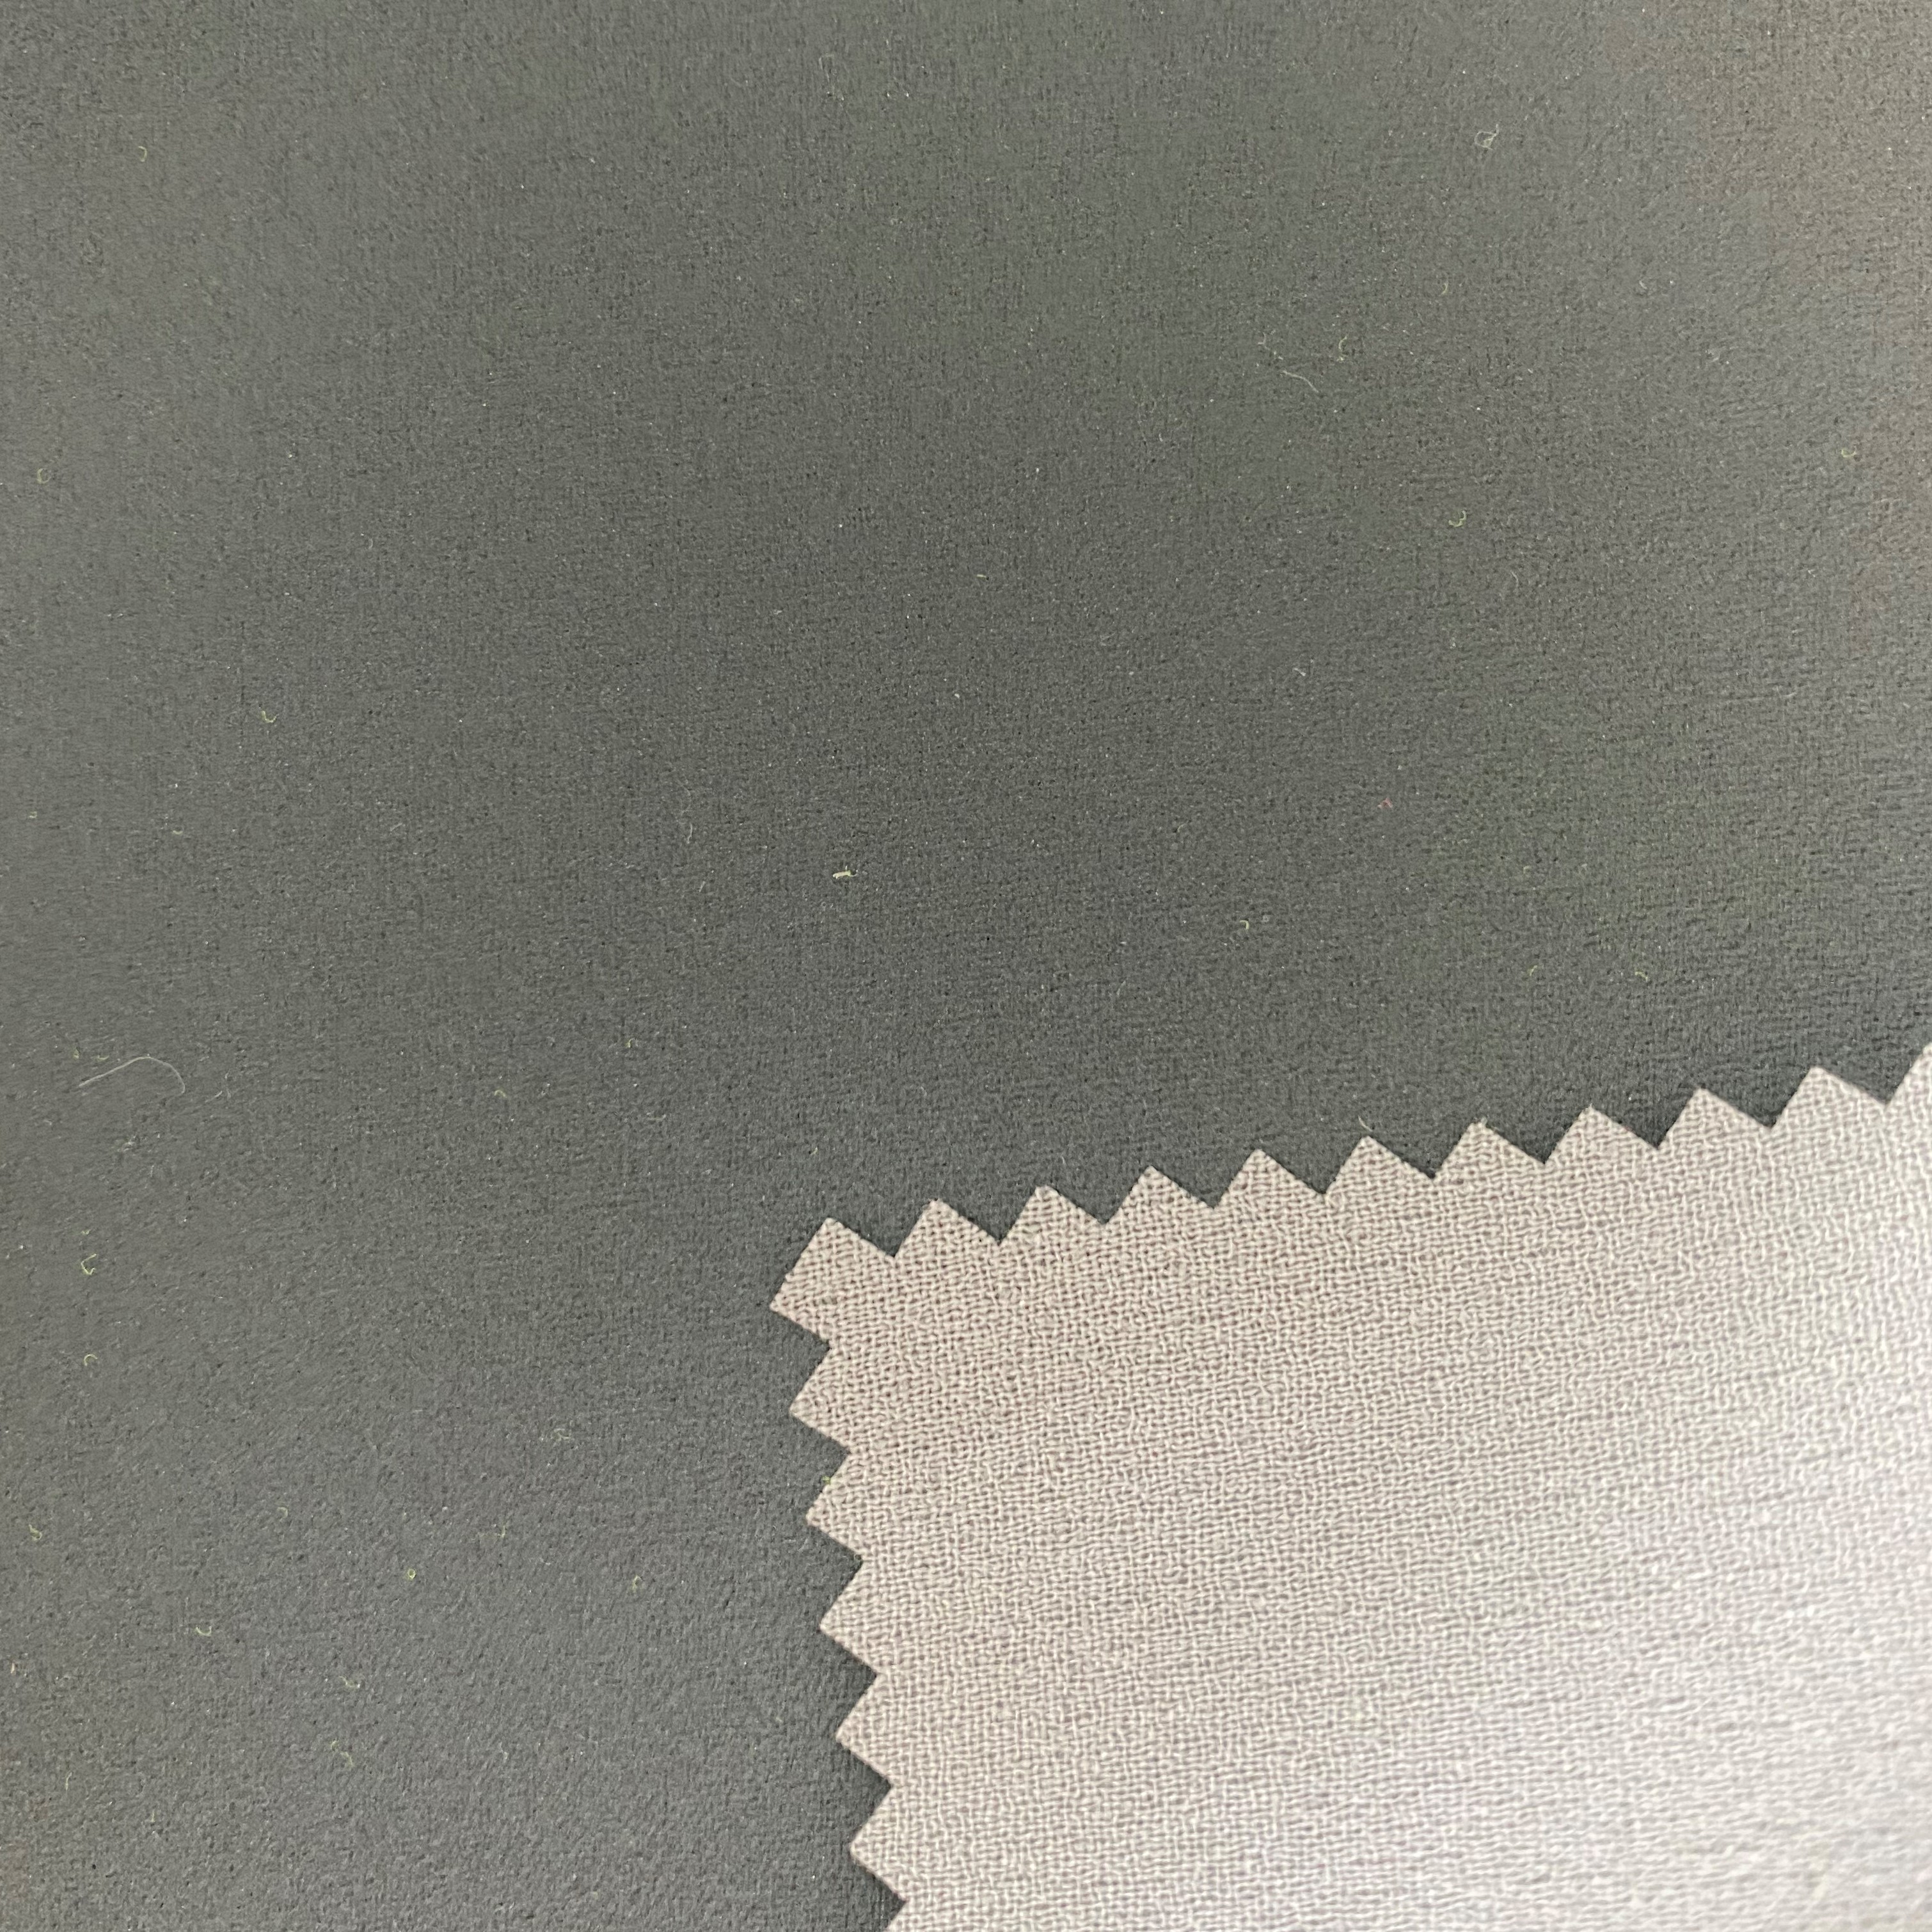 reflective fabric polyester chiffon